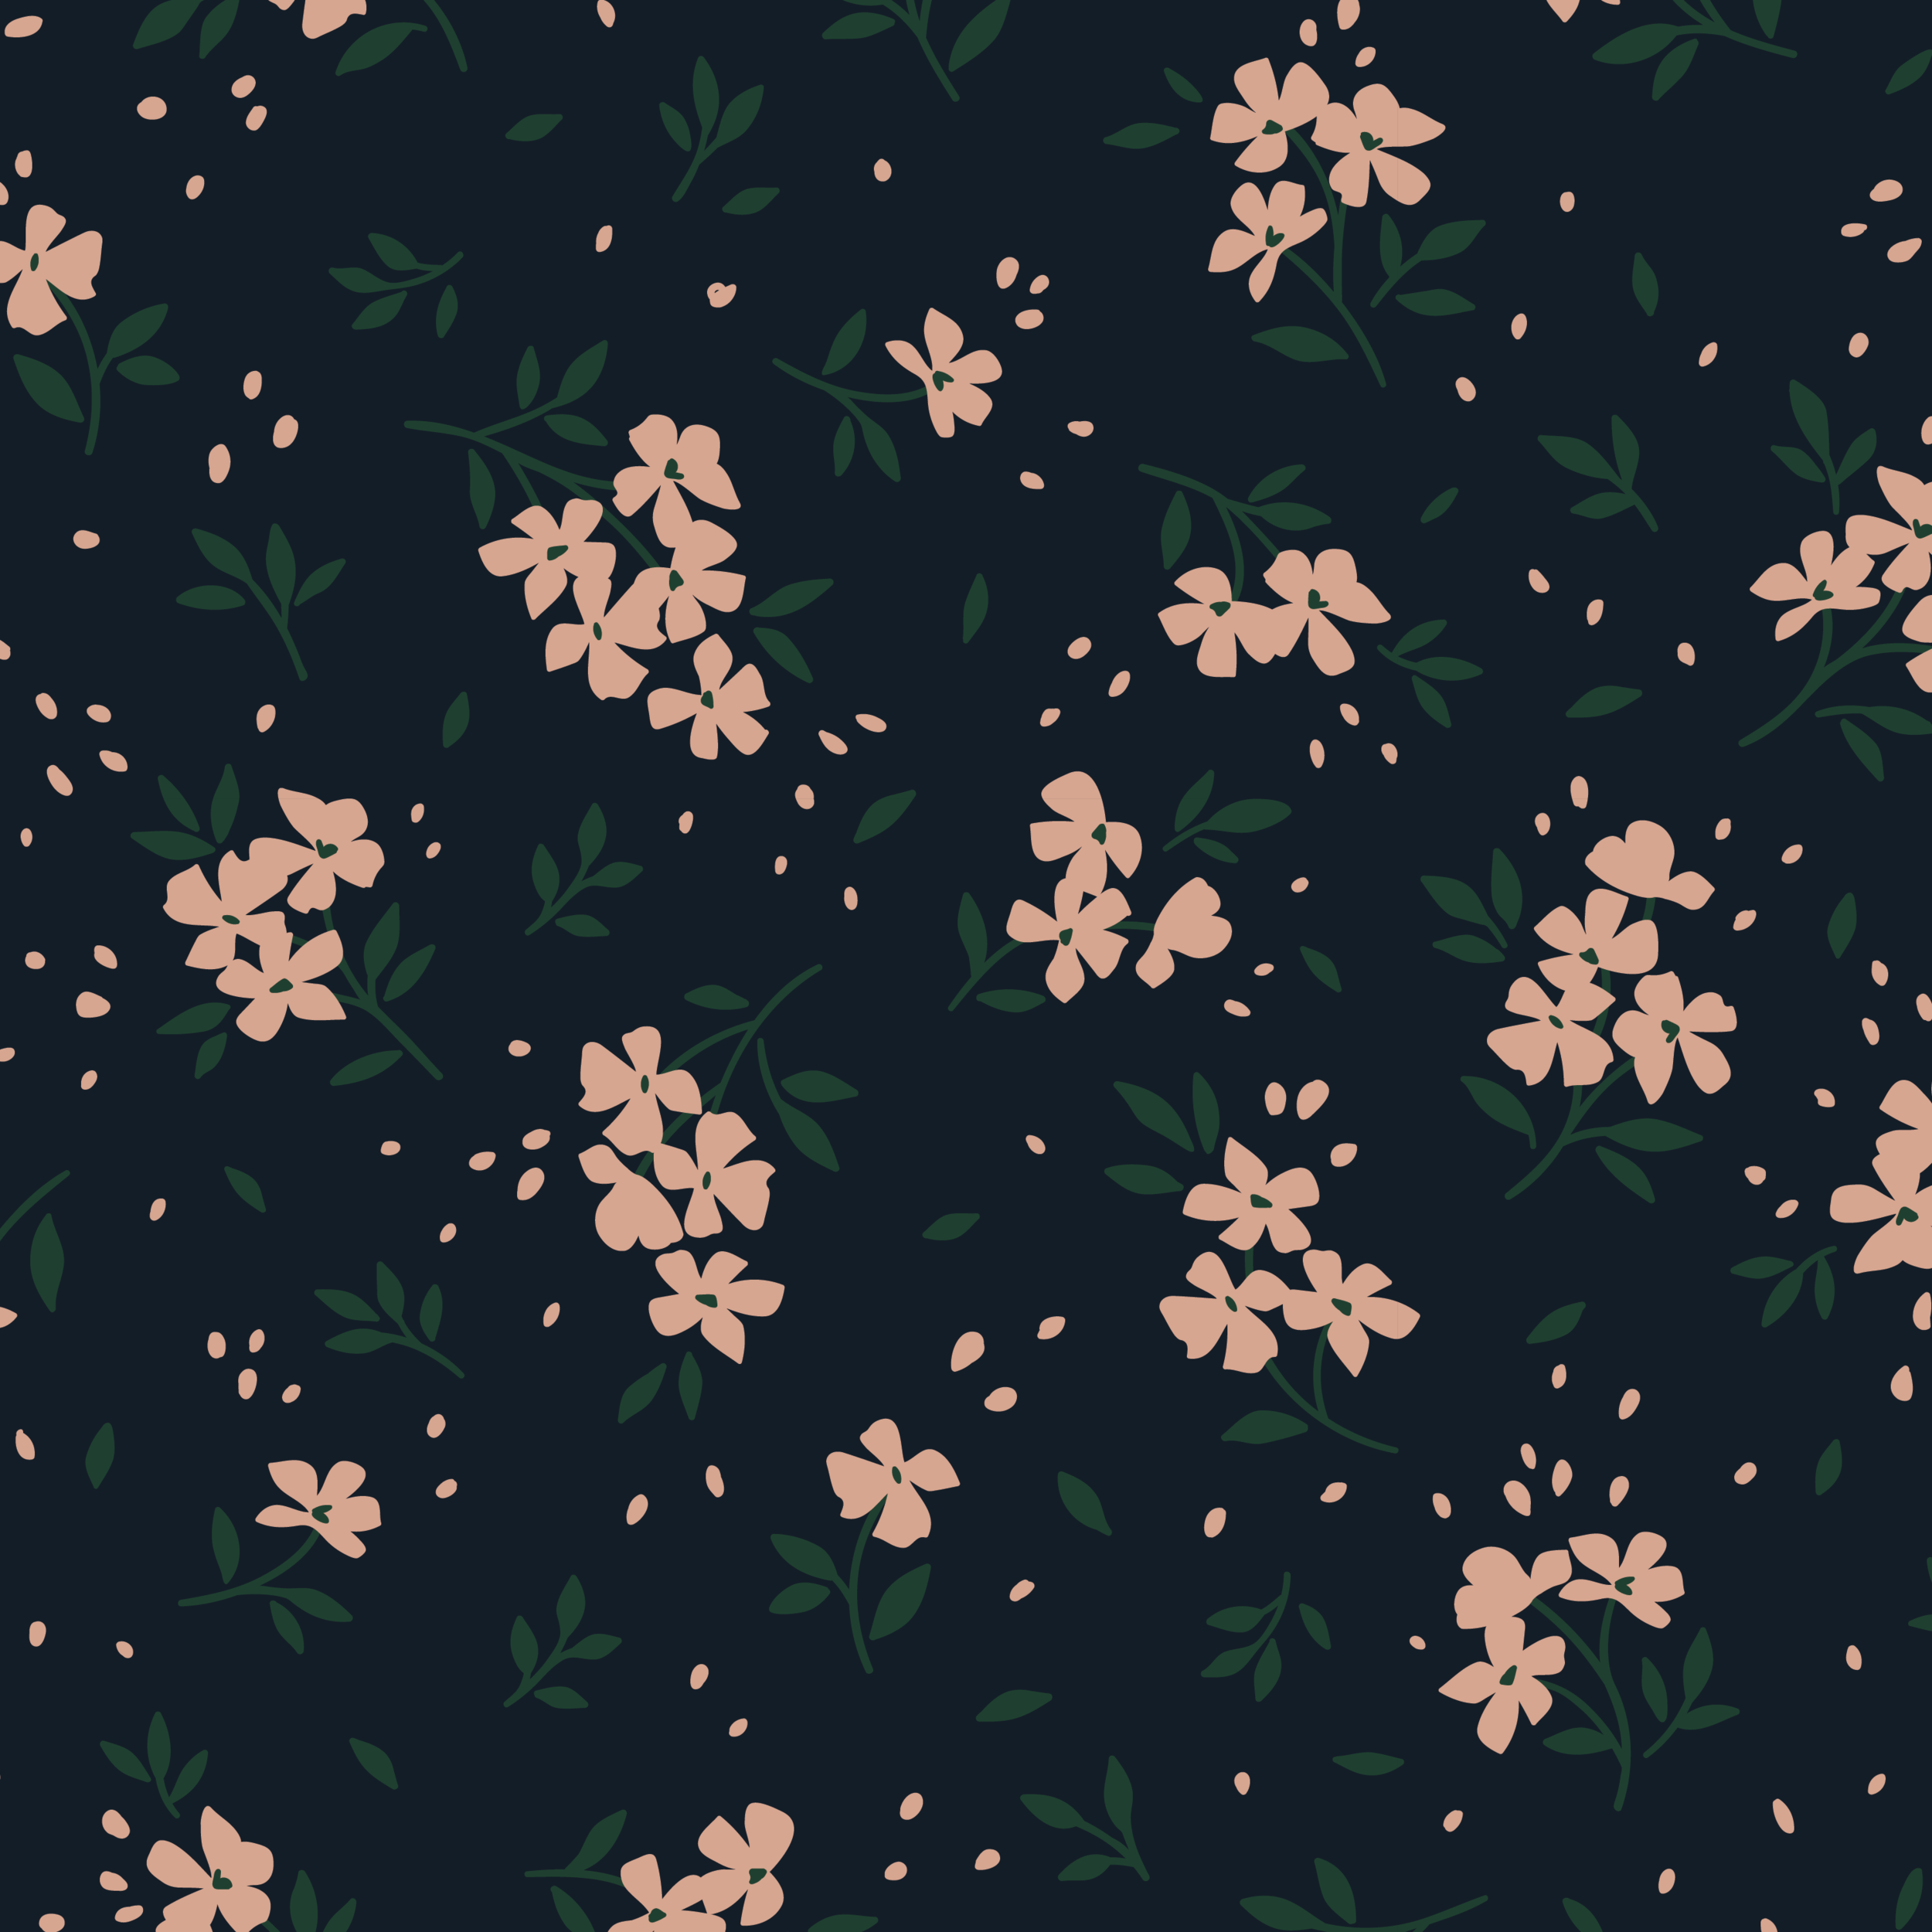 Daisy-Fields_pattern_1.png